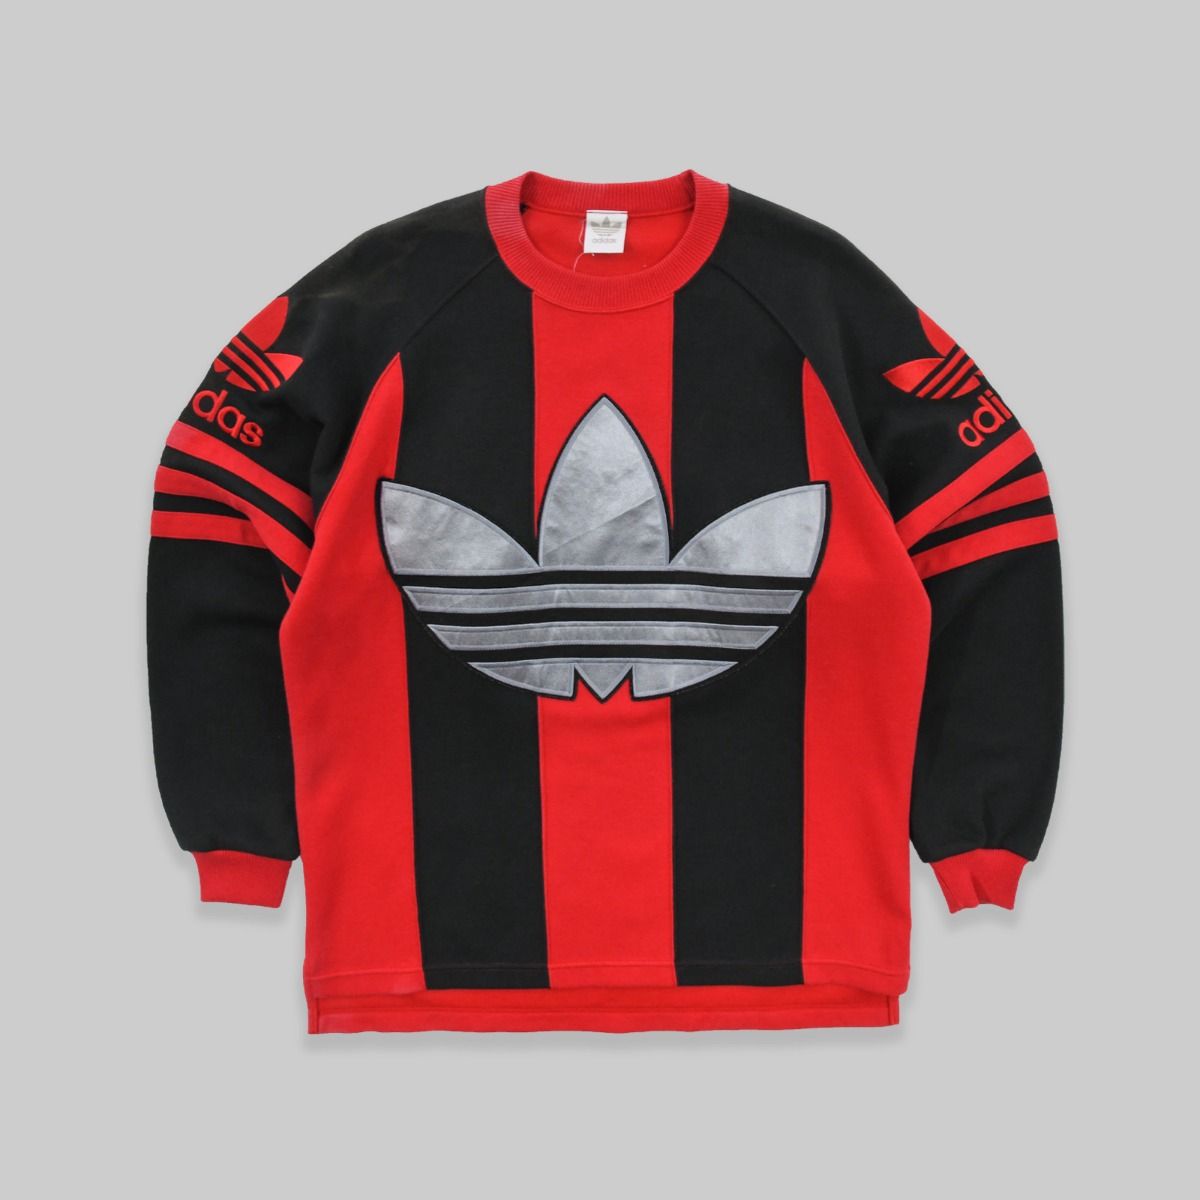 Adidas 1990s Sweatshirt